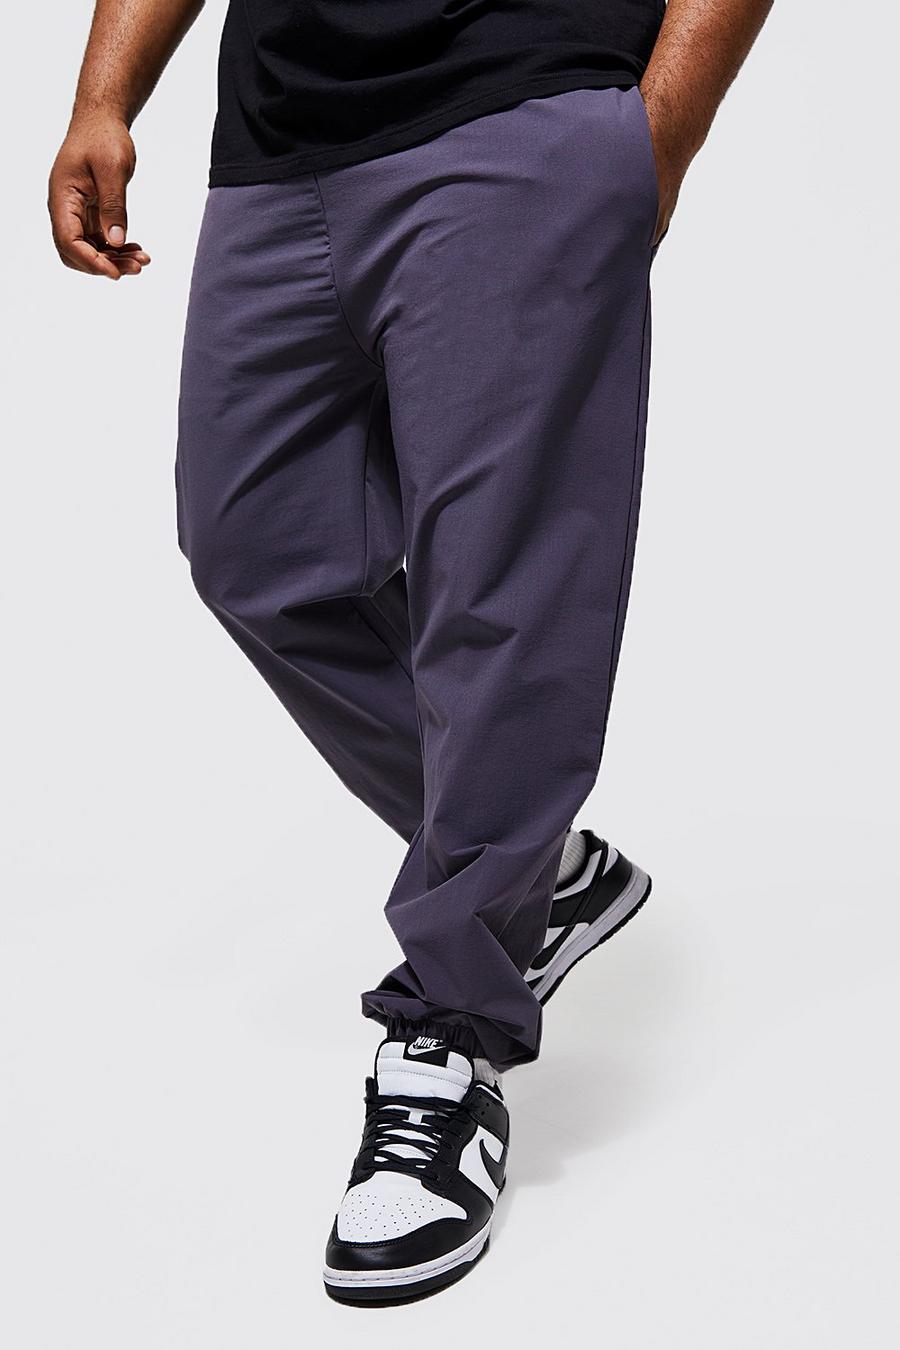 Pantalón Plus ajustado técnico con botamanga, Dark grey image number 1